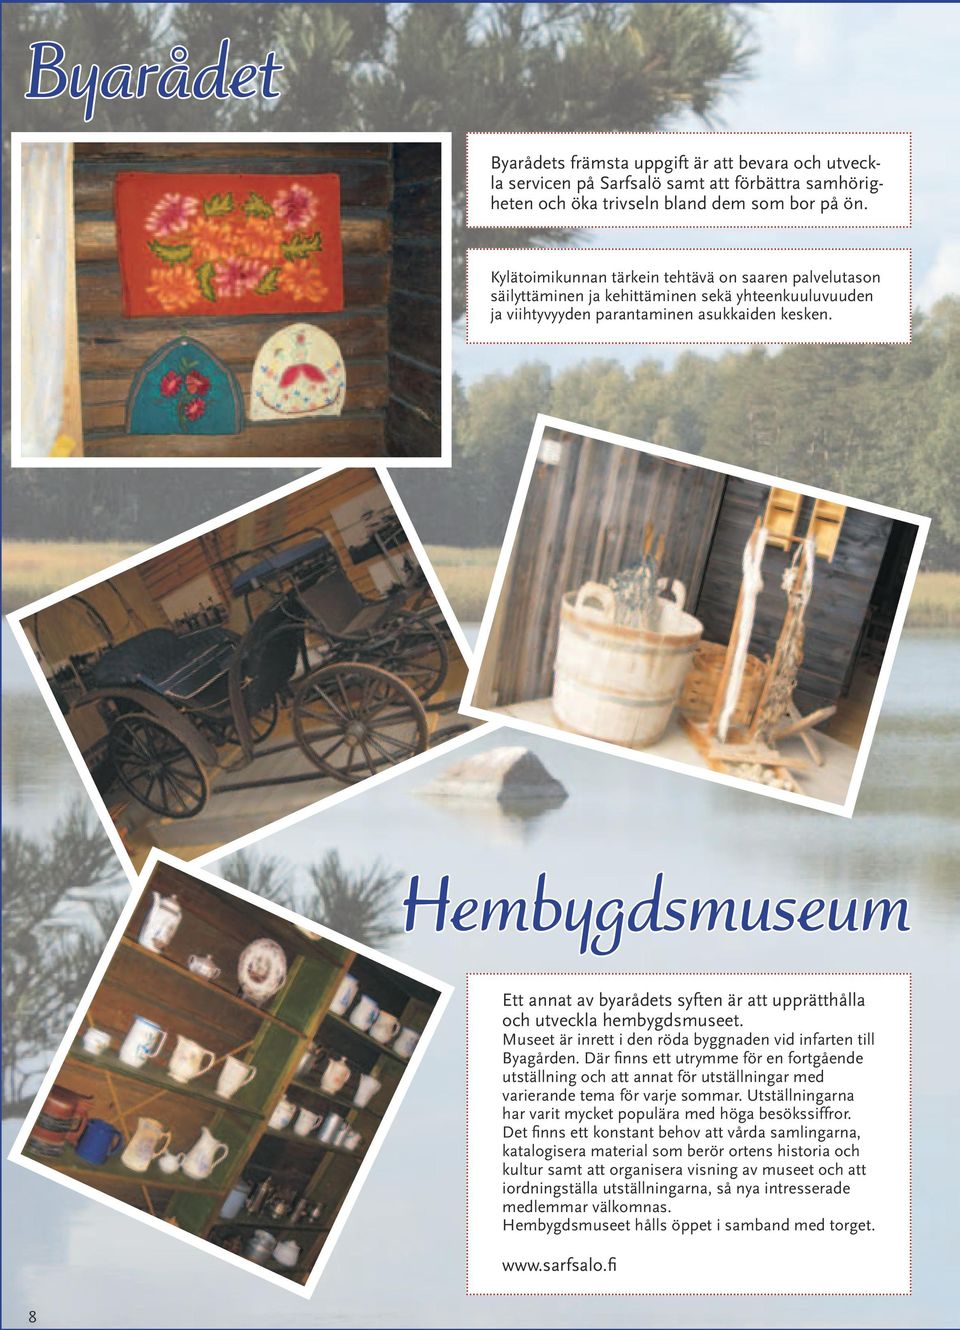 Hembygdsmuseum Ett annat av byarådets syften är att upprätthålla och utveckla hembygdsmuseet. Museet är inrett i den röda byggnaden vid infarten till Byagården.